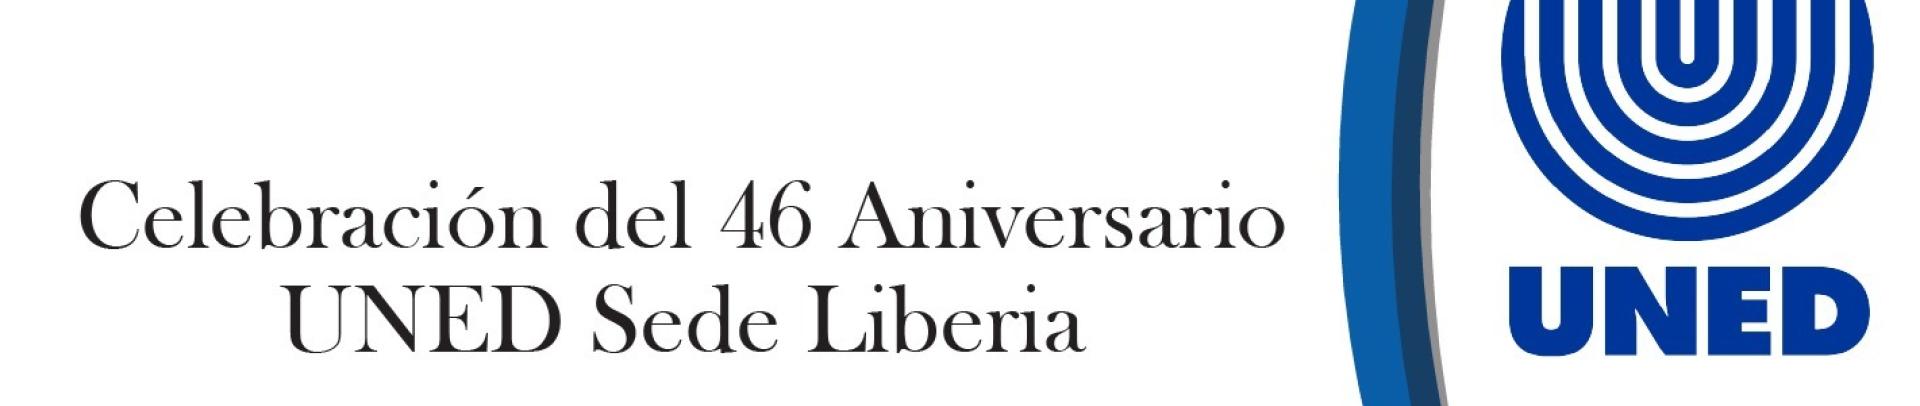 Celebración del 46 aniversario UNED Liberia.